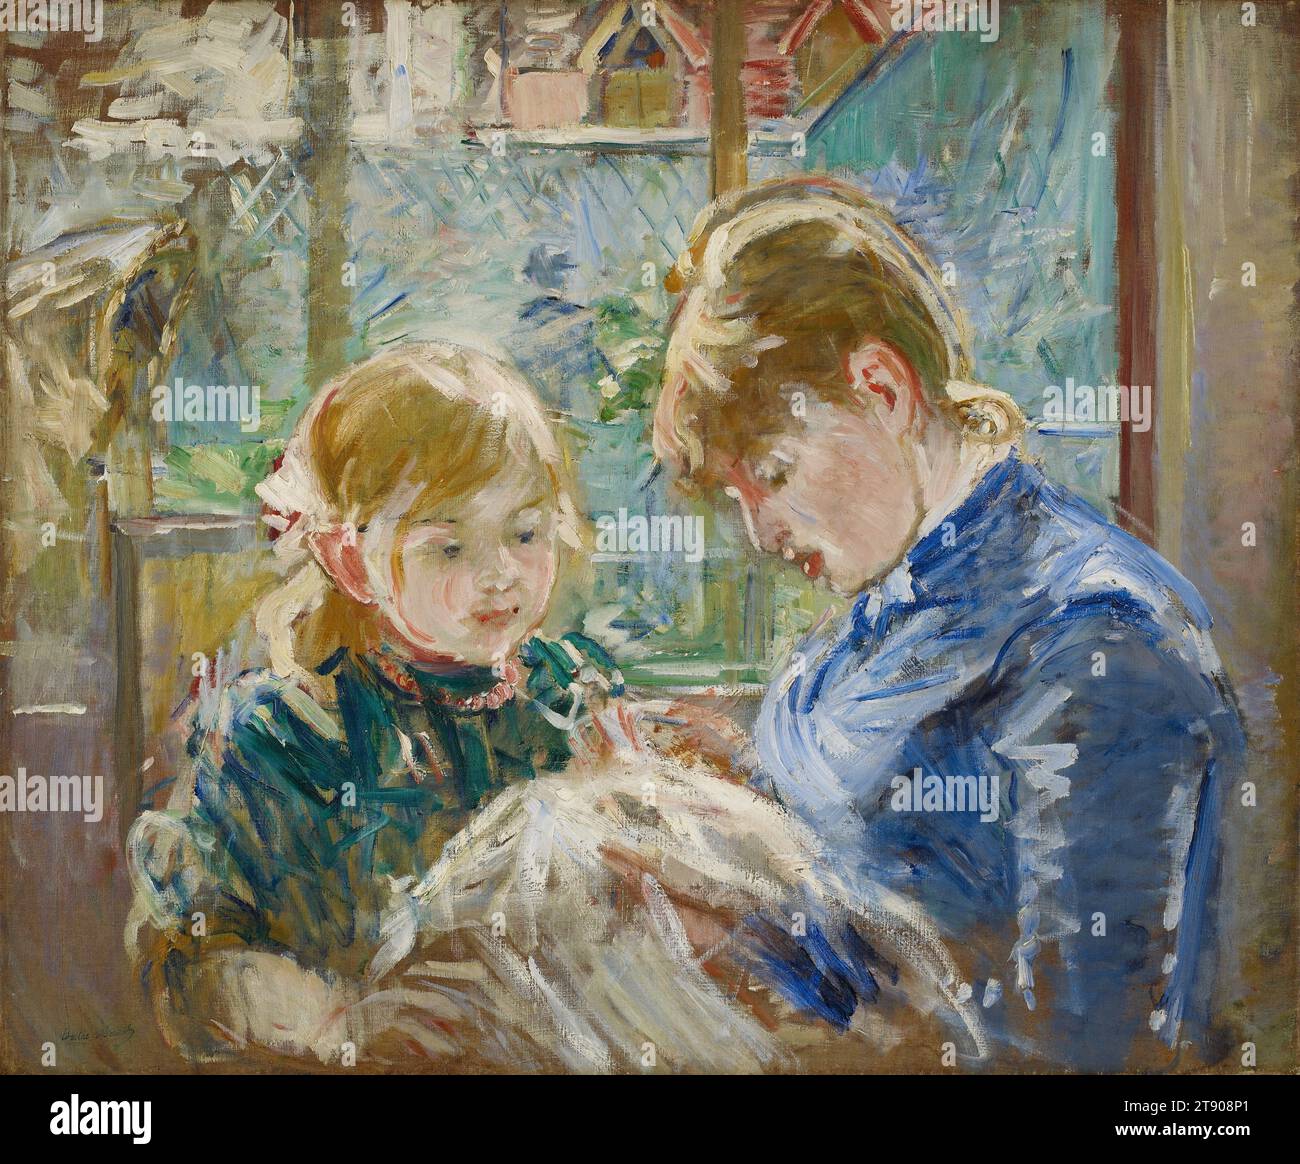 Die Tochter des Künstlers, Julie, mit ihrer Nanny, um 1884, Berthe Morisot, Französisch, 1841 - 1895, 22 1/2 x 28 Zoll (57,15 x 71,12 cm) (Sicht)34 3/4 x 40 1/4 x 4 Zoll (88,27 x 102,24 x 10,16 cm) (Außenrahmen), Öl auf Leinwand, Frankreich, 19. Jahrhundert Stockfoto